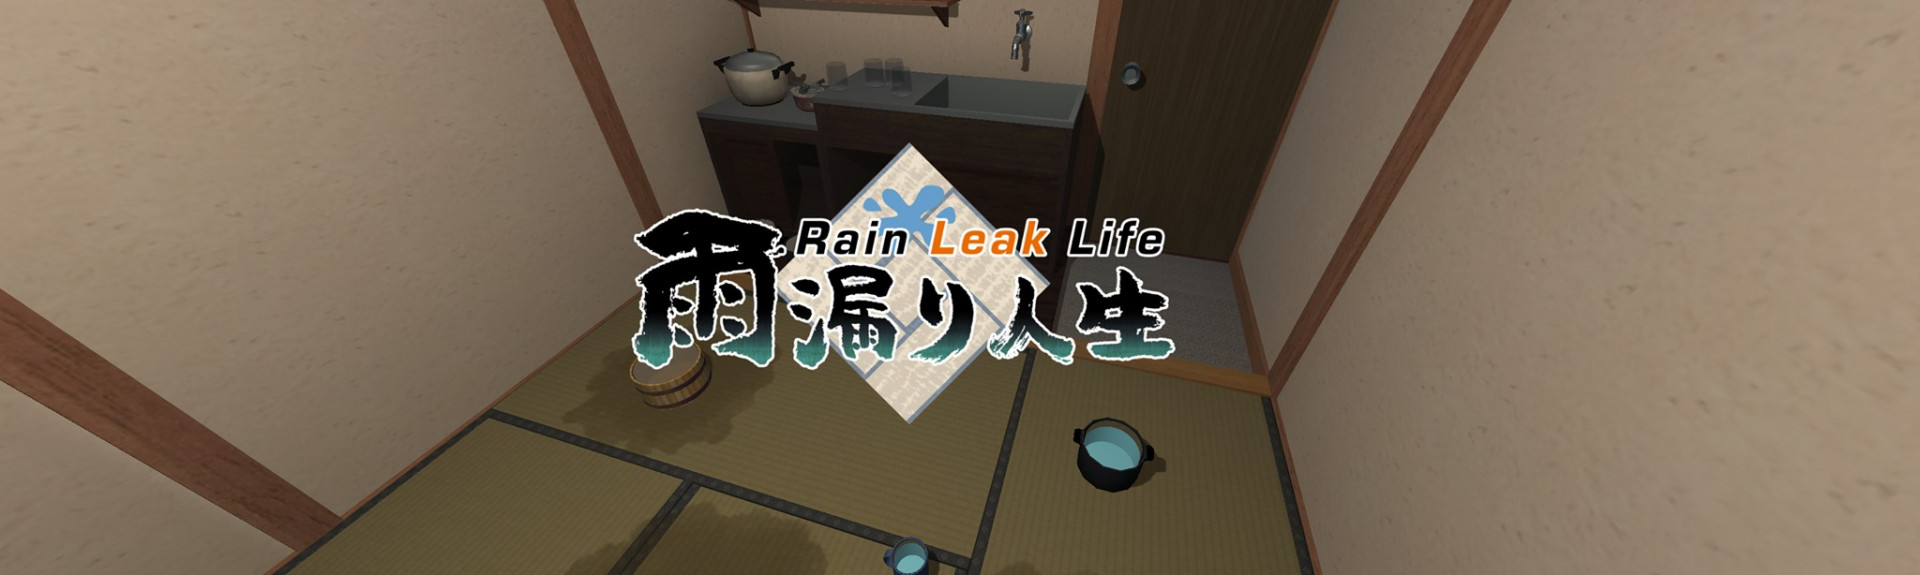 Rain Leak Life - 雨漏り人生